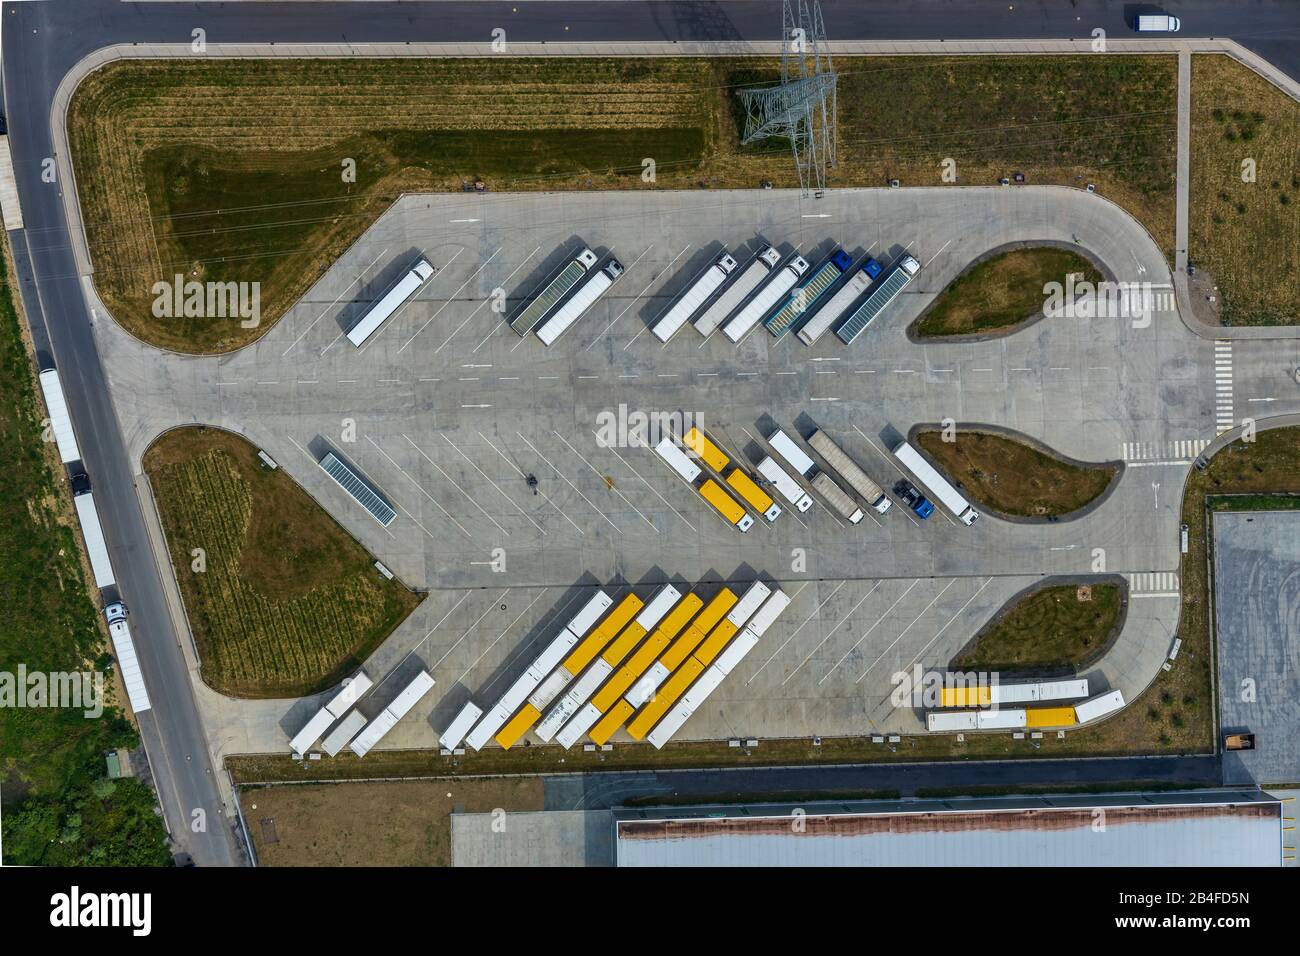 Vista aérea del estacionamiento para camiones del centro logístico Amazon Logistik Werne GmbH - DTM1 en Werne, área de Ruhr, Renania del Norte-Westfalia, Alemania Foto de stock